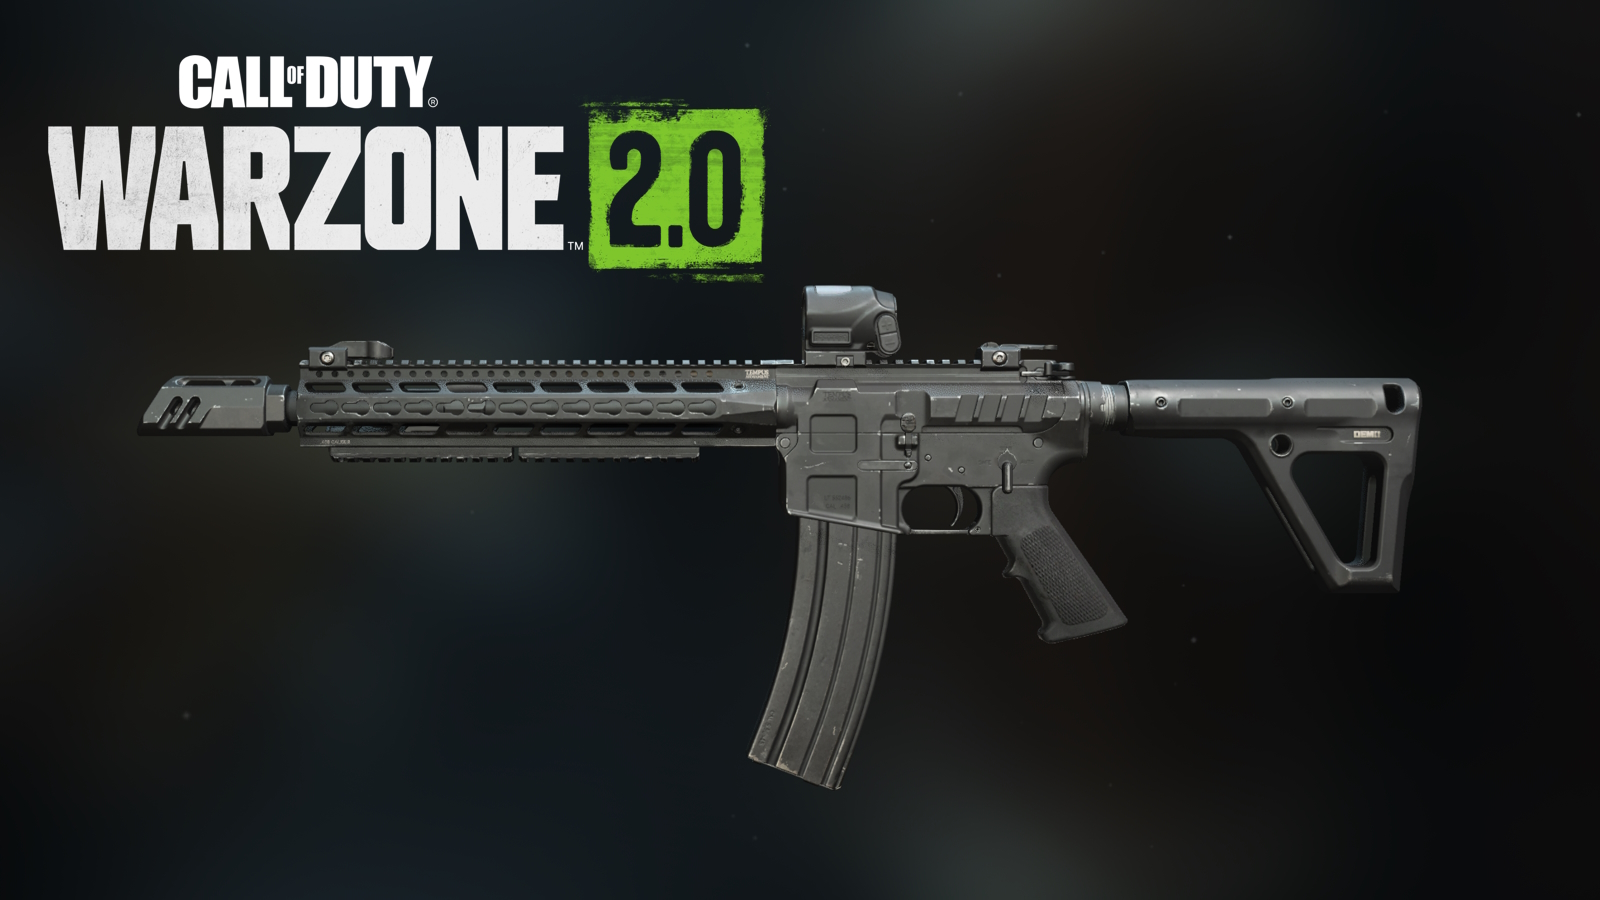 FTAC Recon con la mejor carga con el logotipo de Call of Duty Warzone 2 arriba